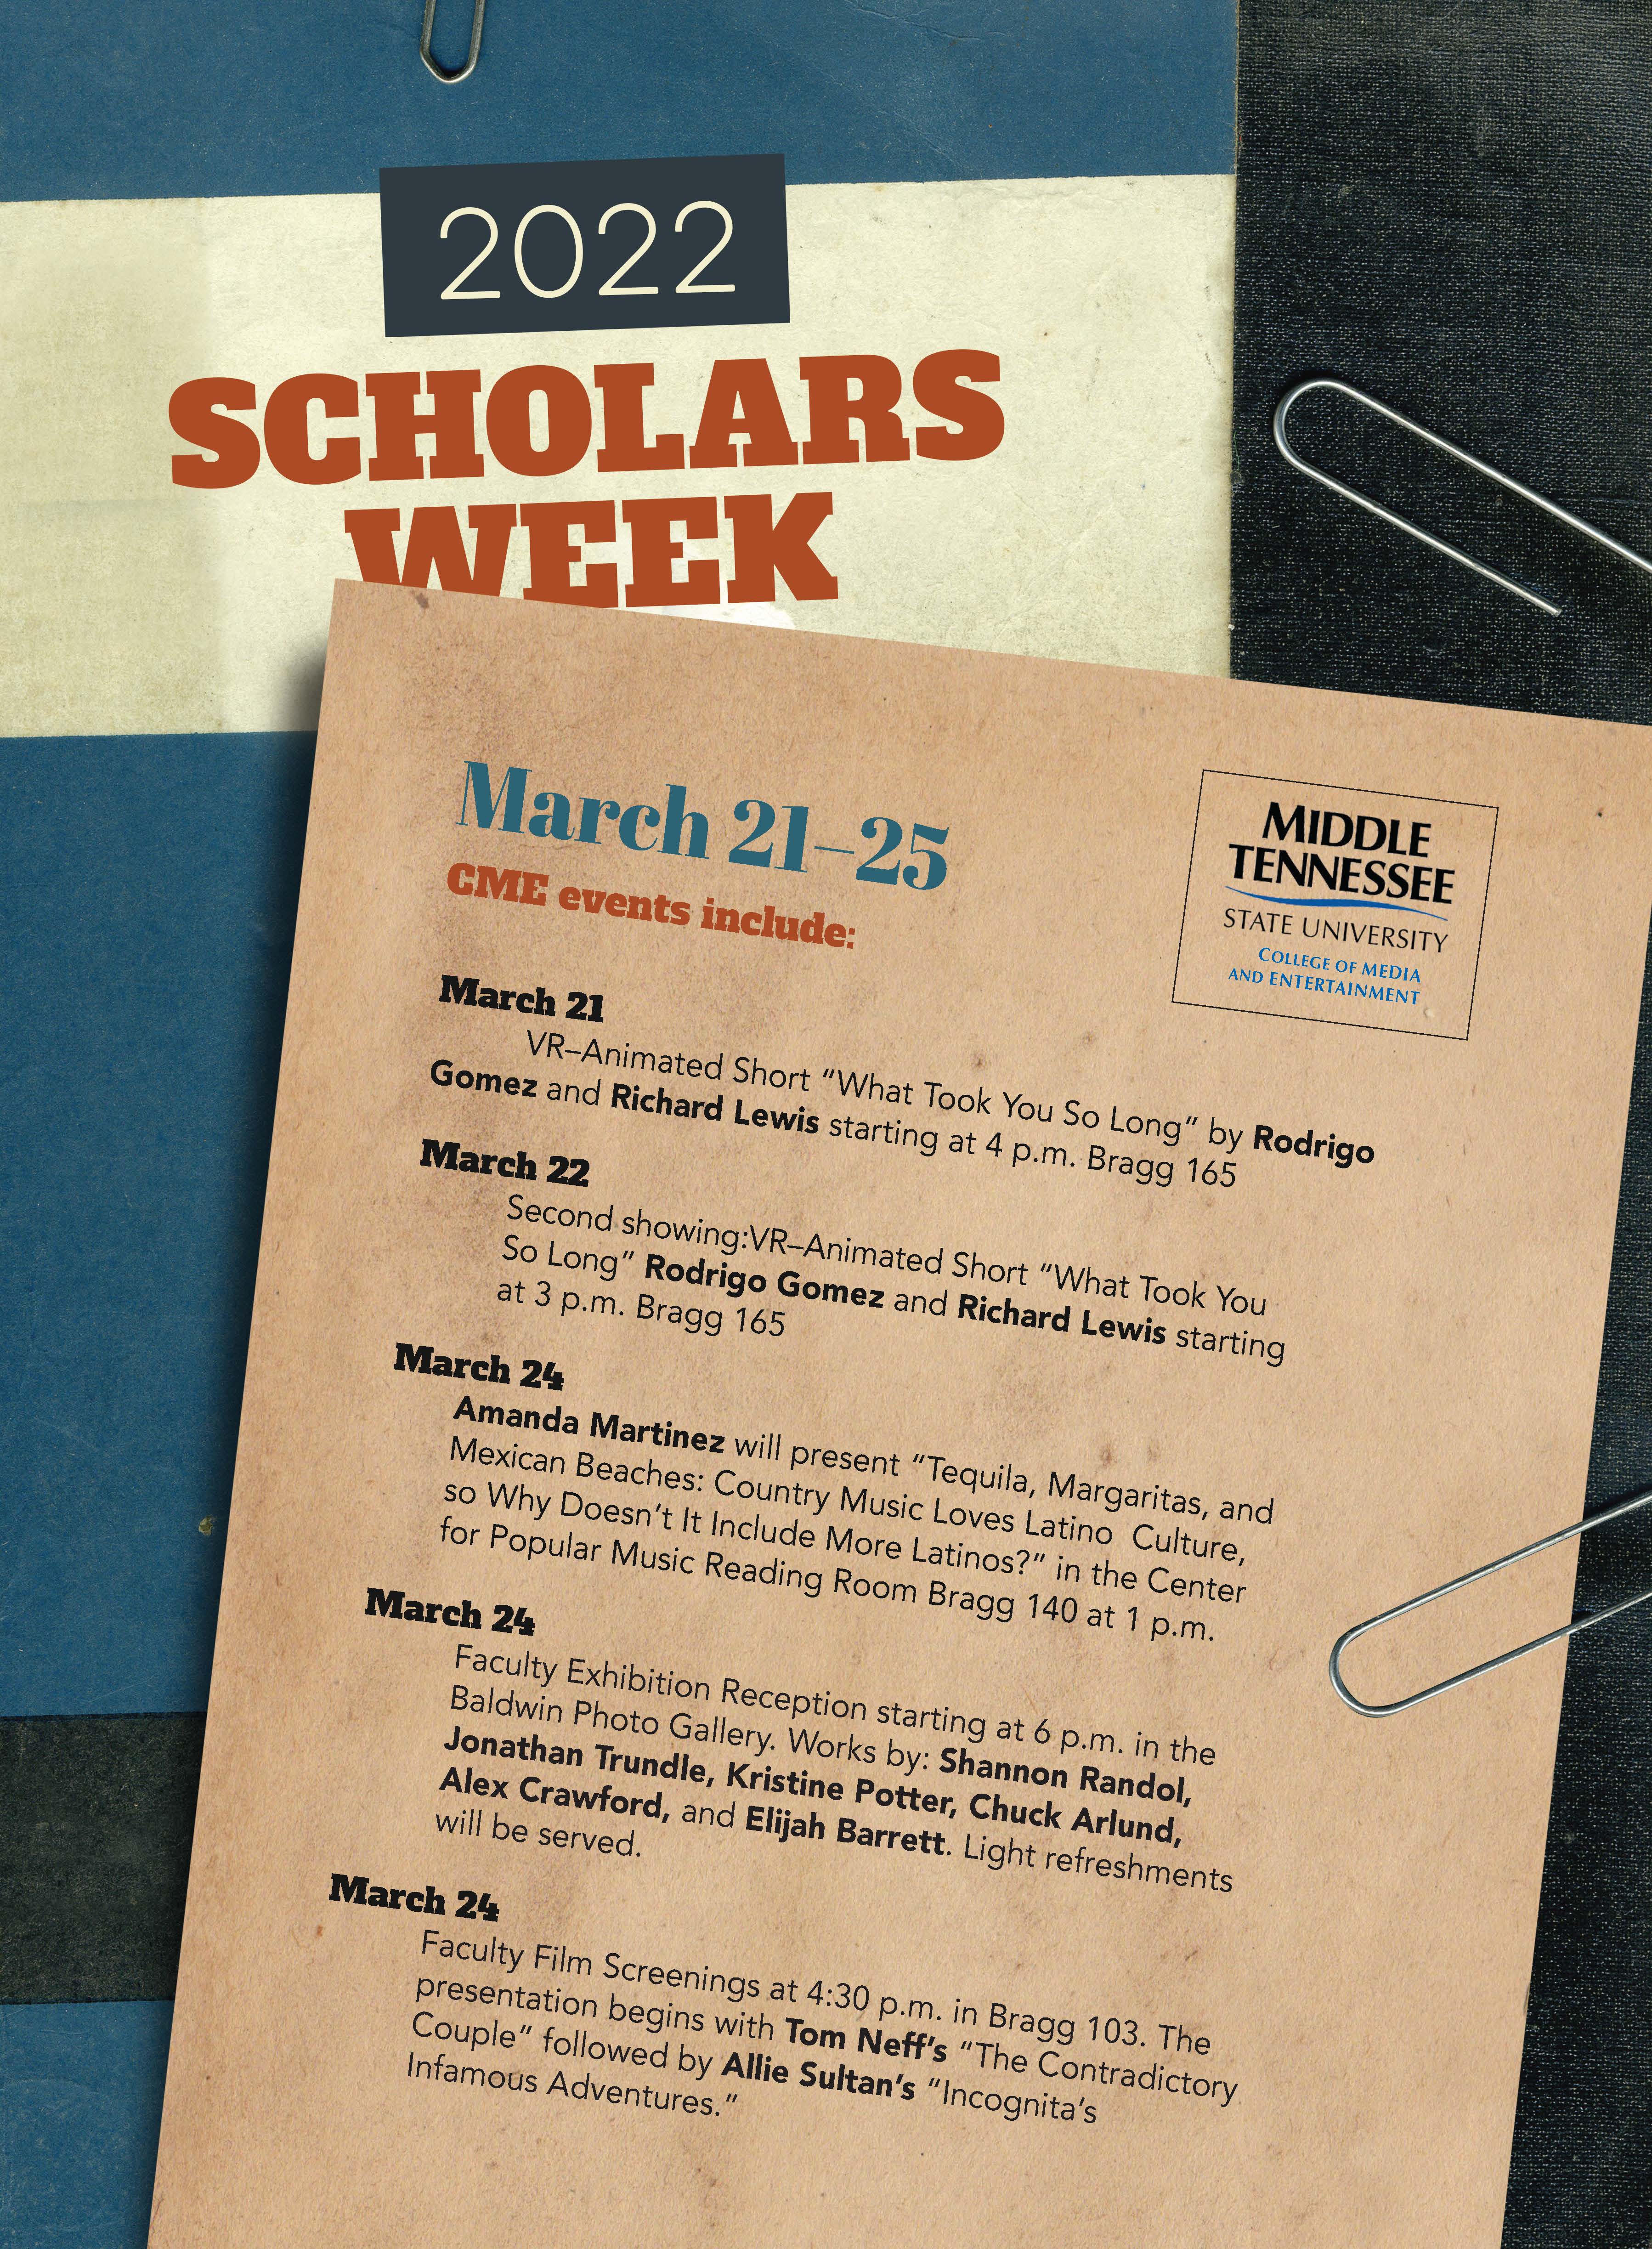 Scholars Week 2022 CME